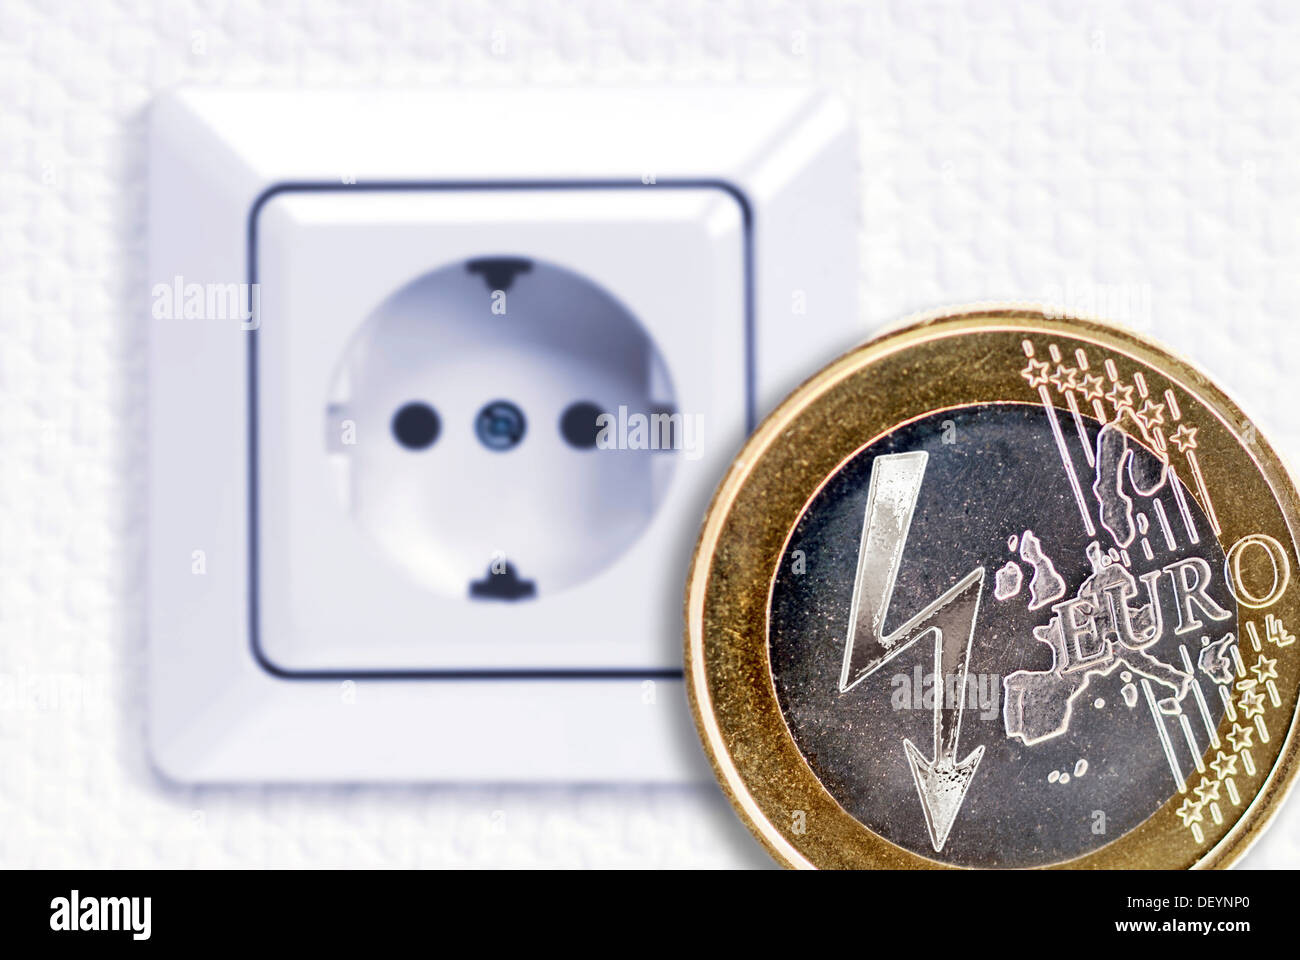 Ein-Euro-Münze mit einem Blitz Blitz-Power-Symbol vor einer Steckdose,  symbolisches Bild für steigende Stromkosten Stockfotografie - Alamy